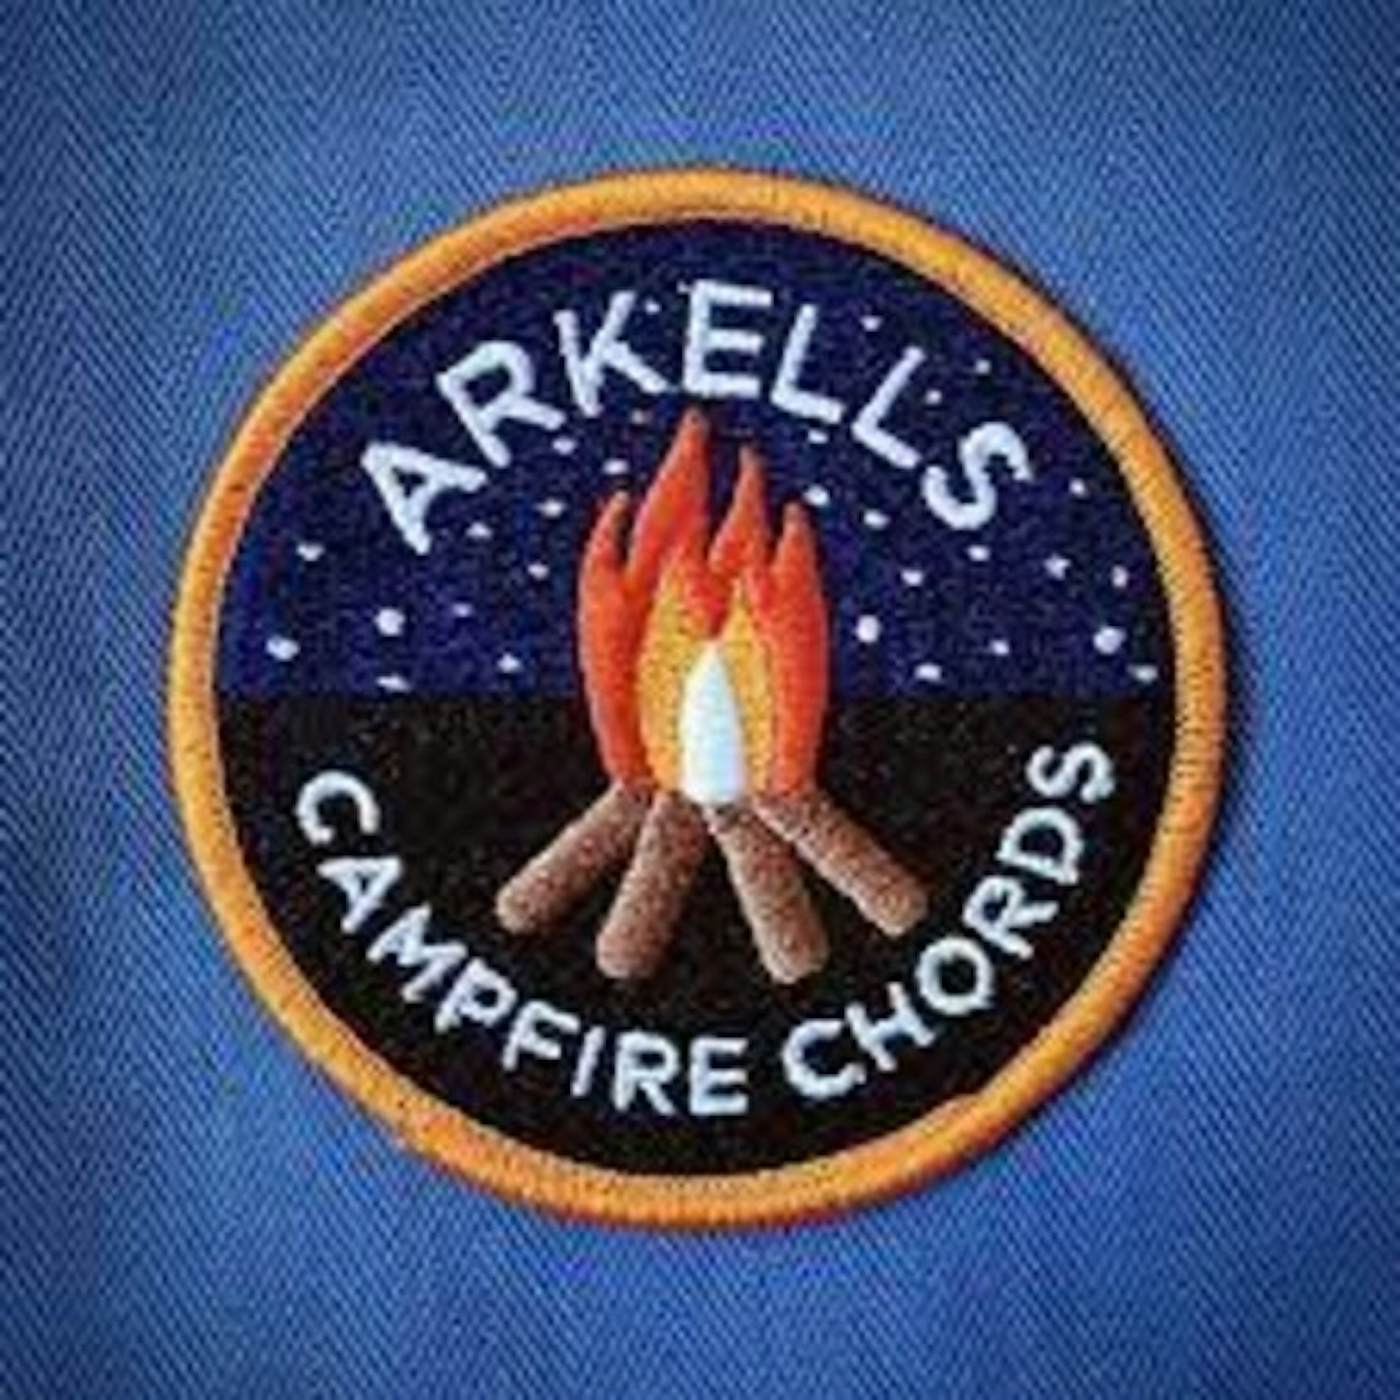 Arkells CAMPFIRE CHORDS CD